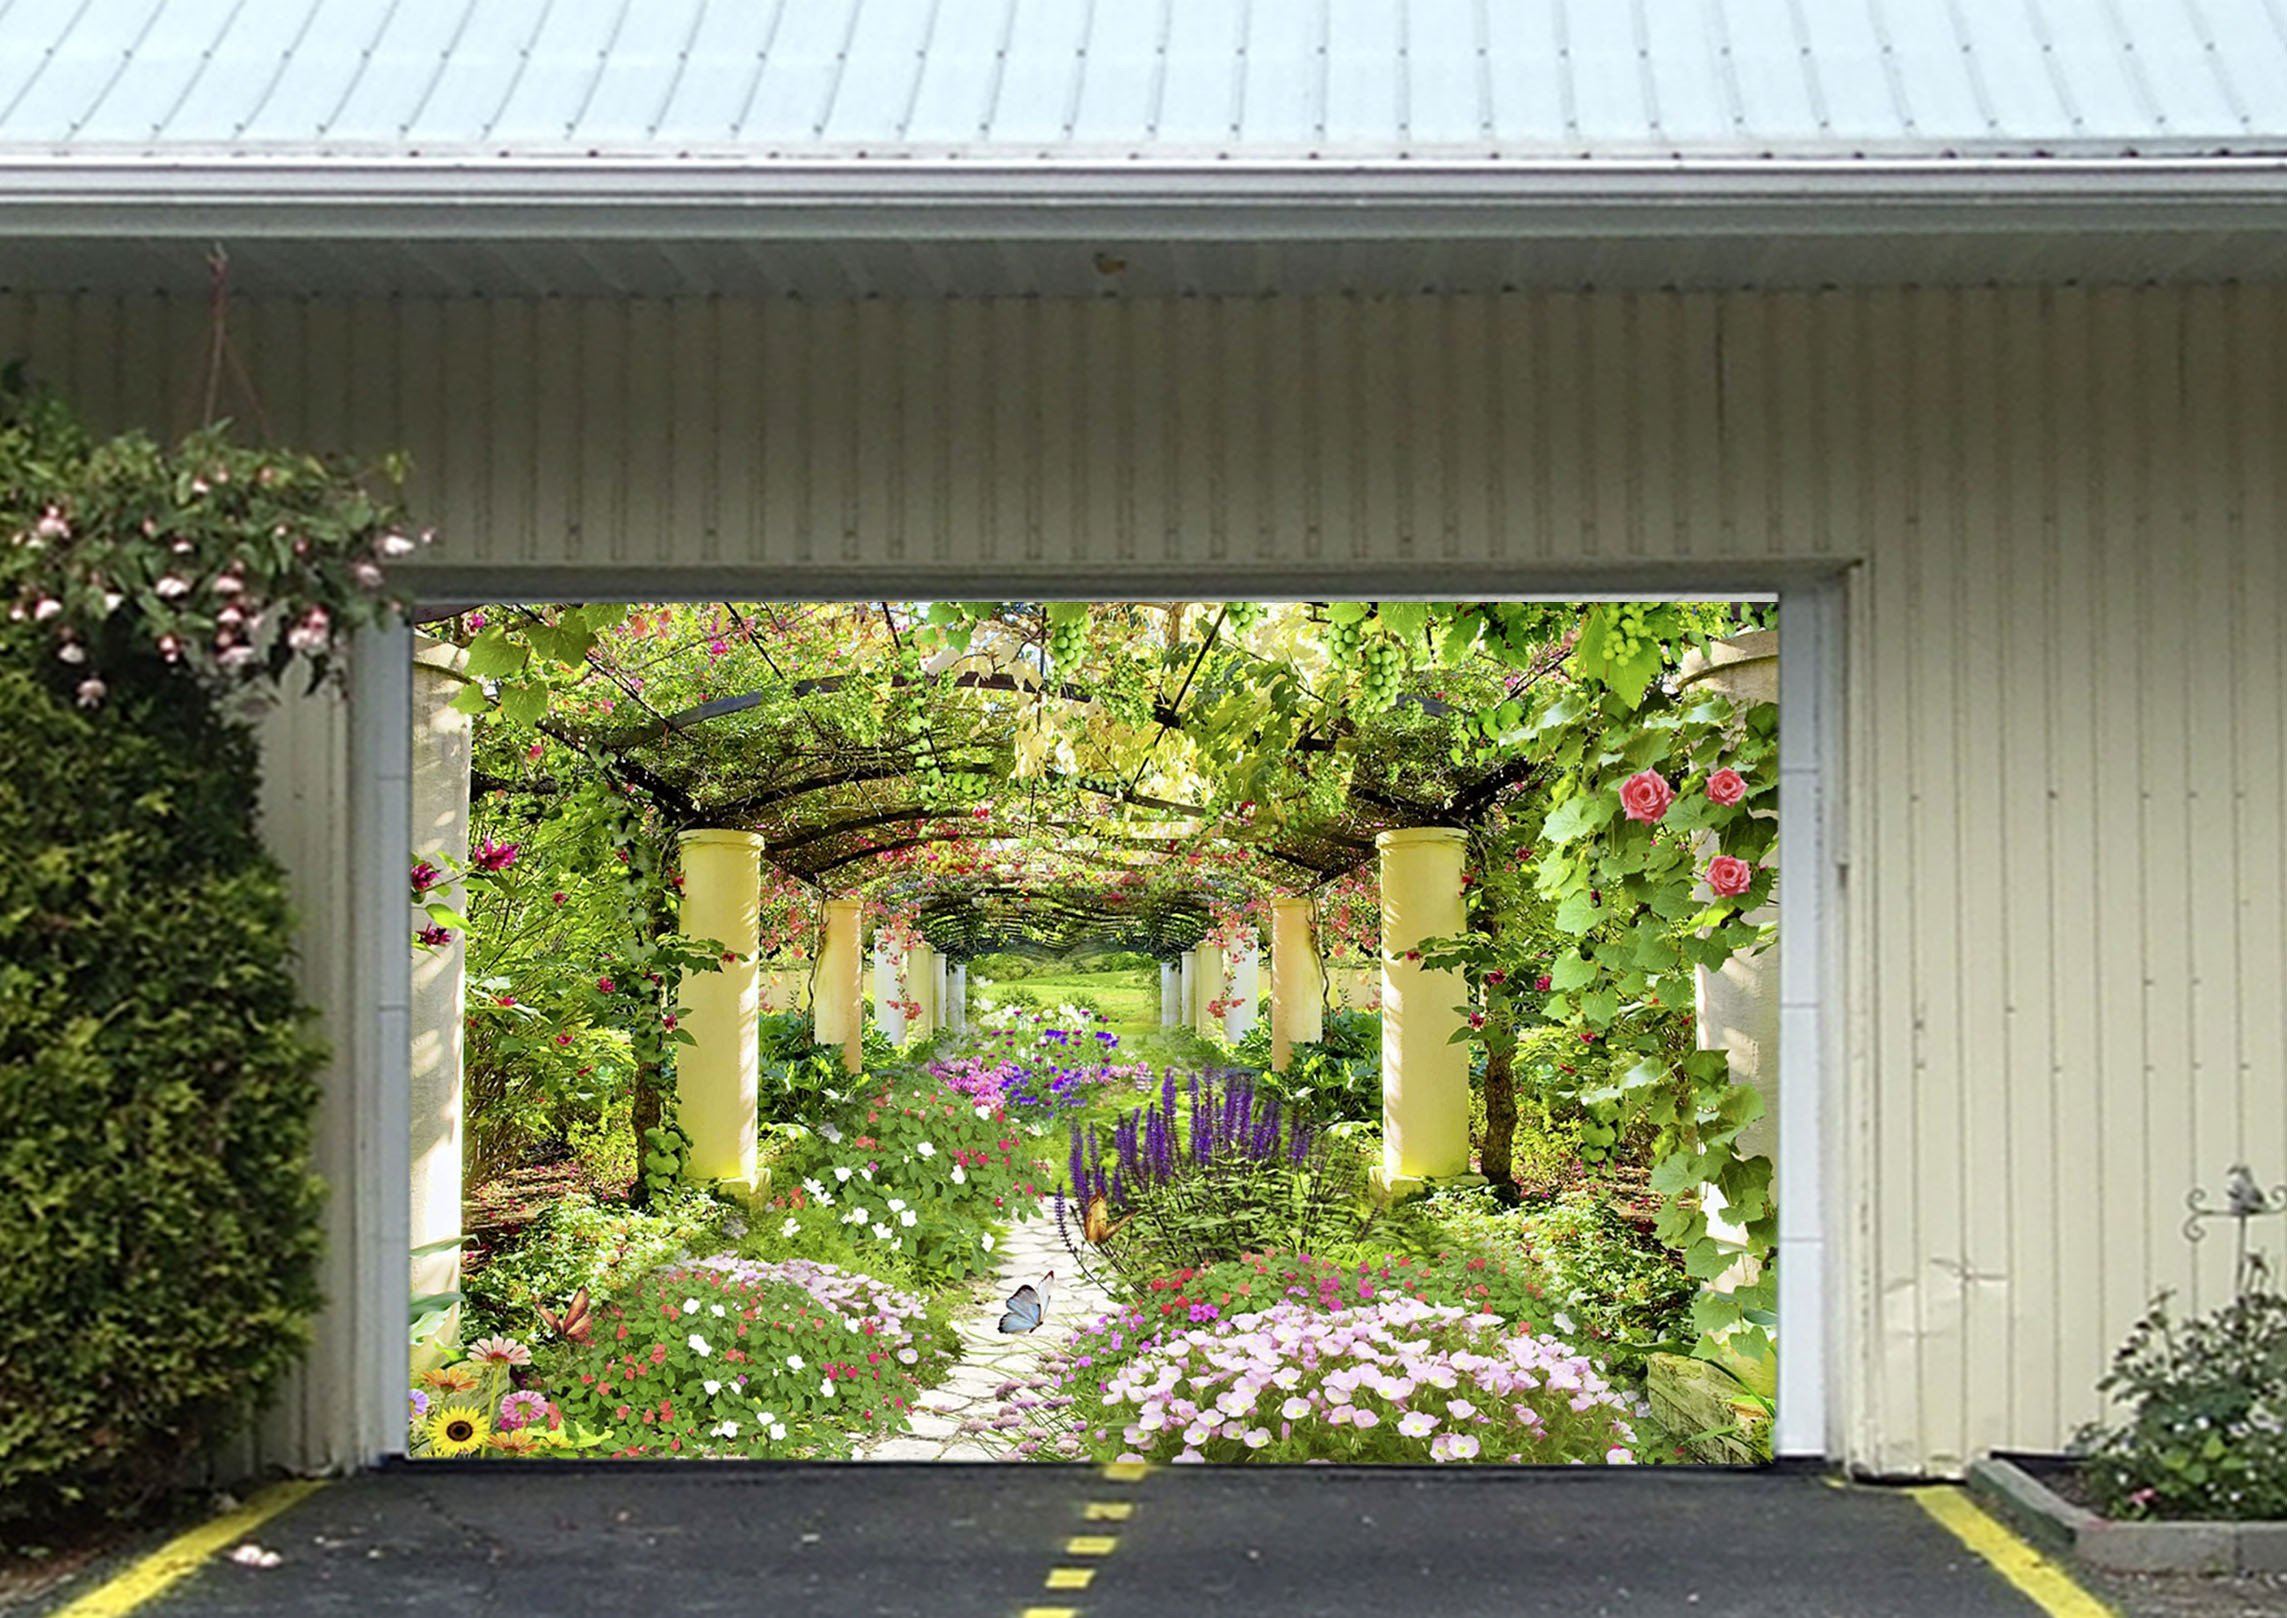 3D Flowers Vines Corridor 359 Garage Door Mural Wallpaper AJ Wallpaper 